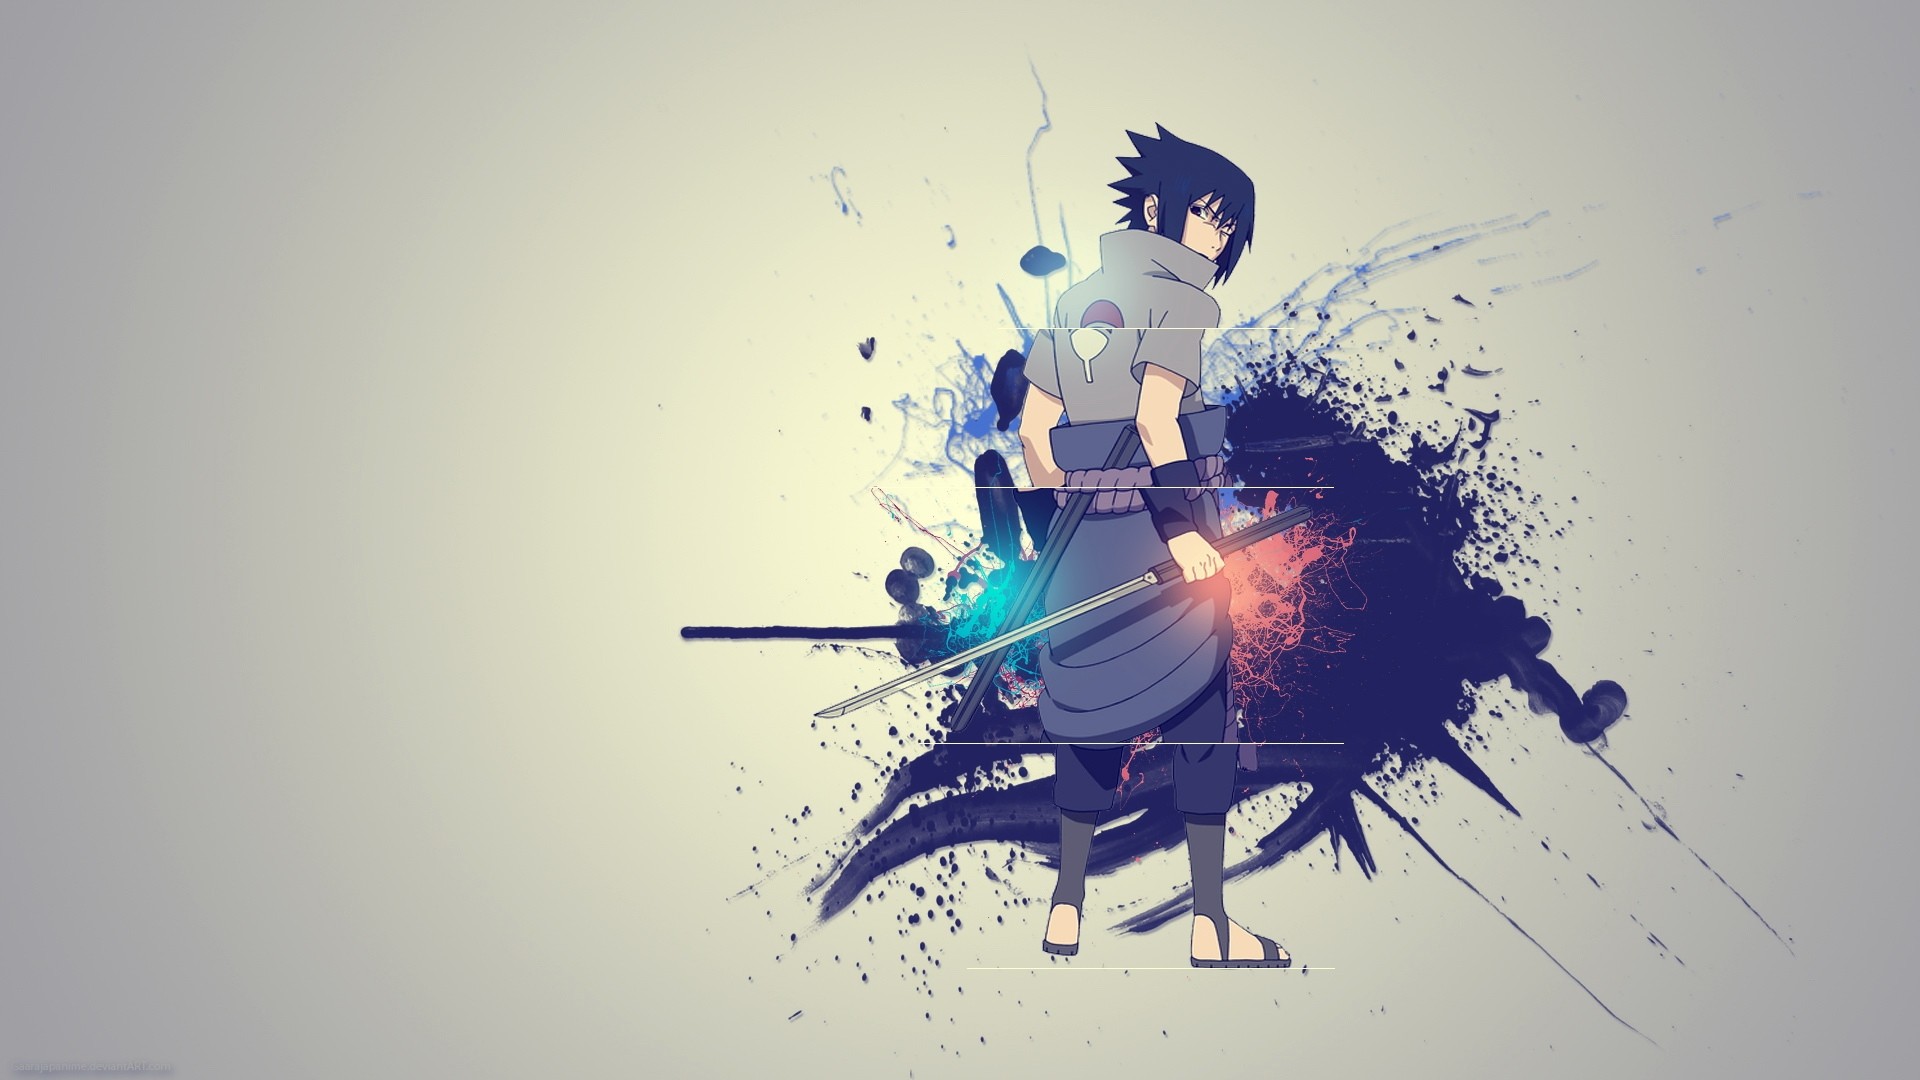 Hình nền Naruto Shippuden Sasuke sẽ khiến bạn thấy những phân đoạn đầy cảm xúc của cuộc hành trình. Nhìn thấy các nhân vật yêu thích phiêu lưu cùng nhau để đạt được mục tiêu chung sẽ khiến bạn cảm thấy thật phấn khích!